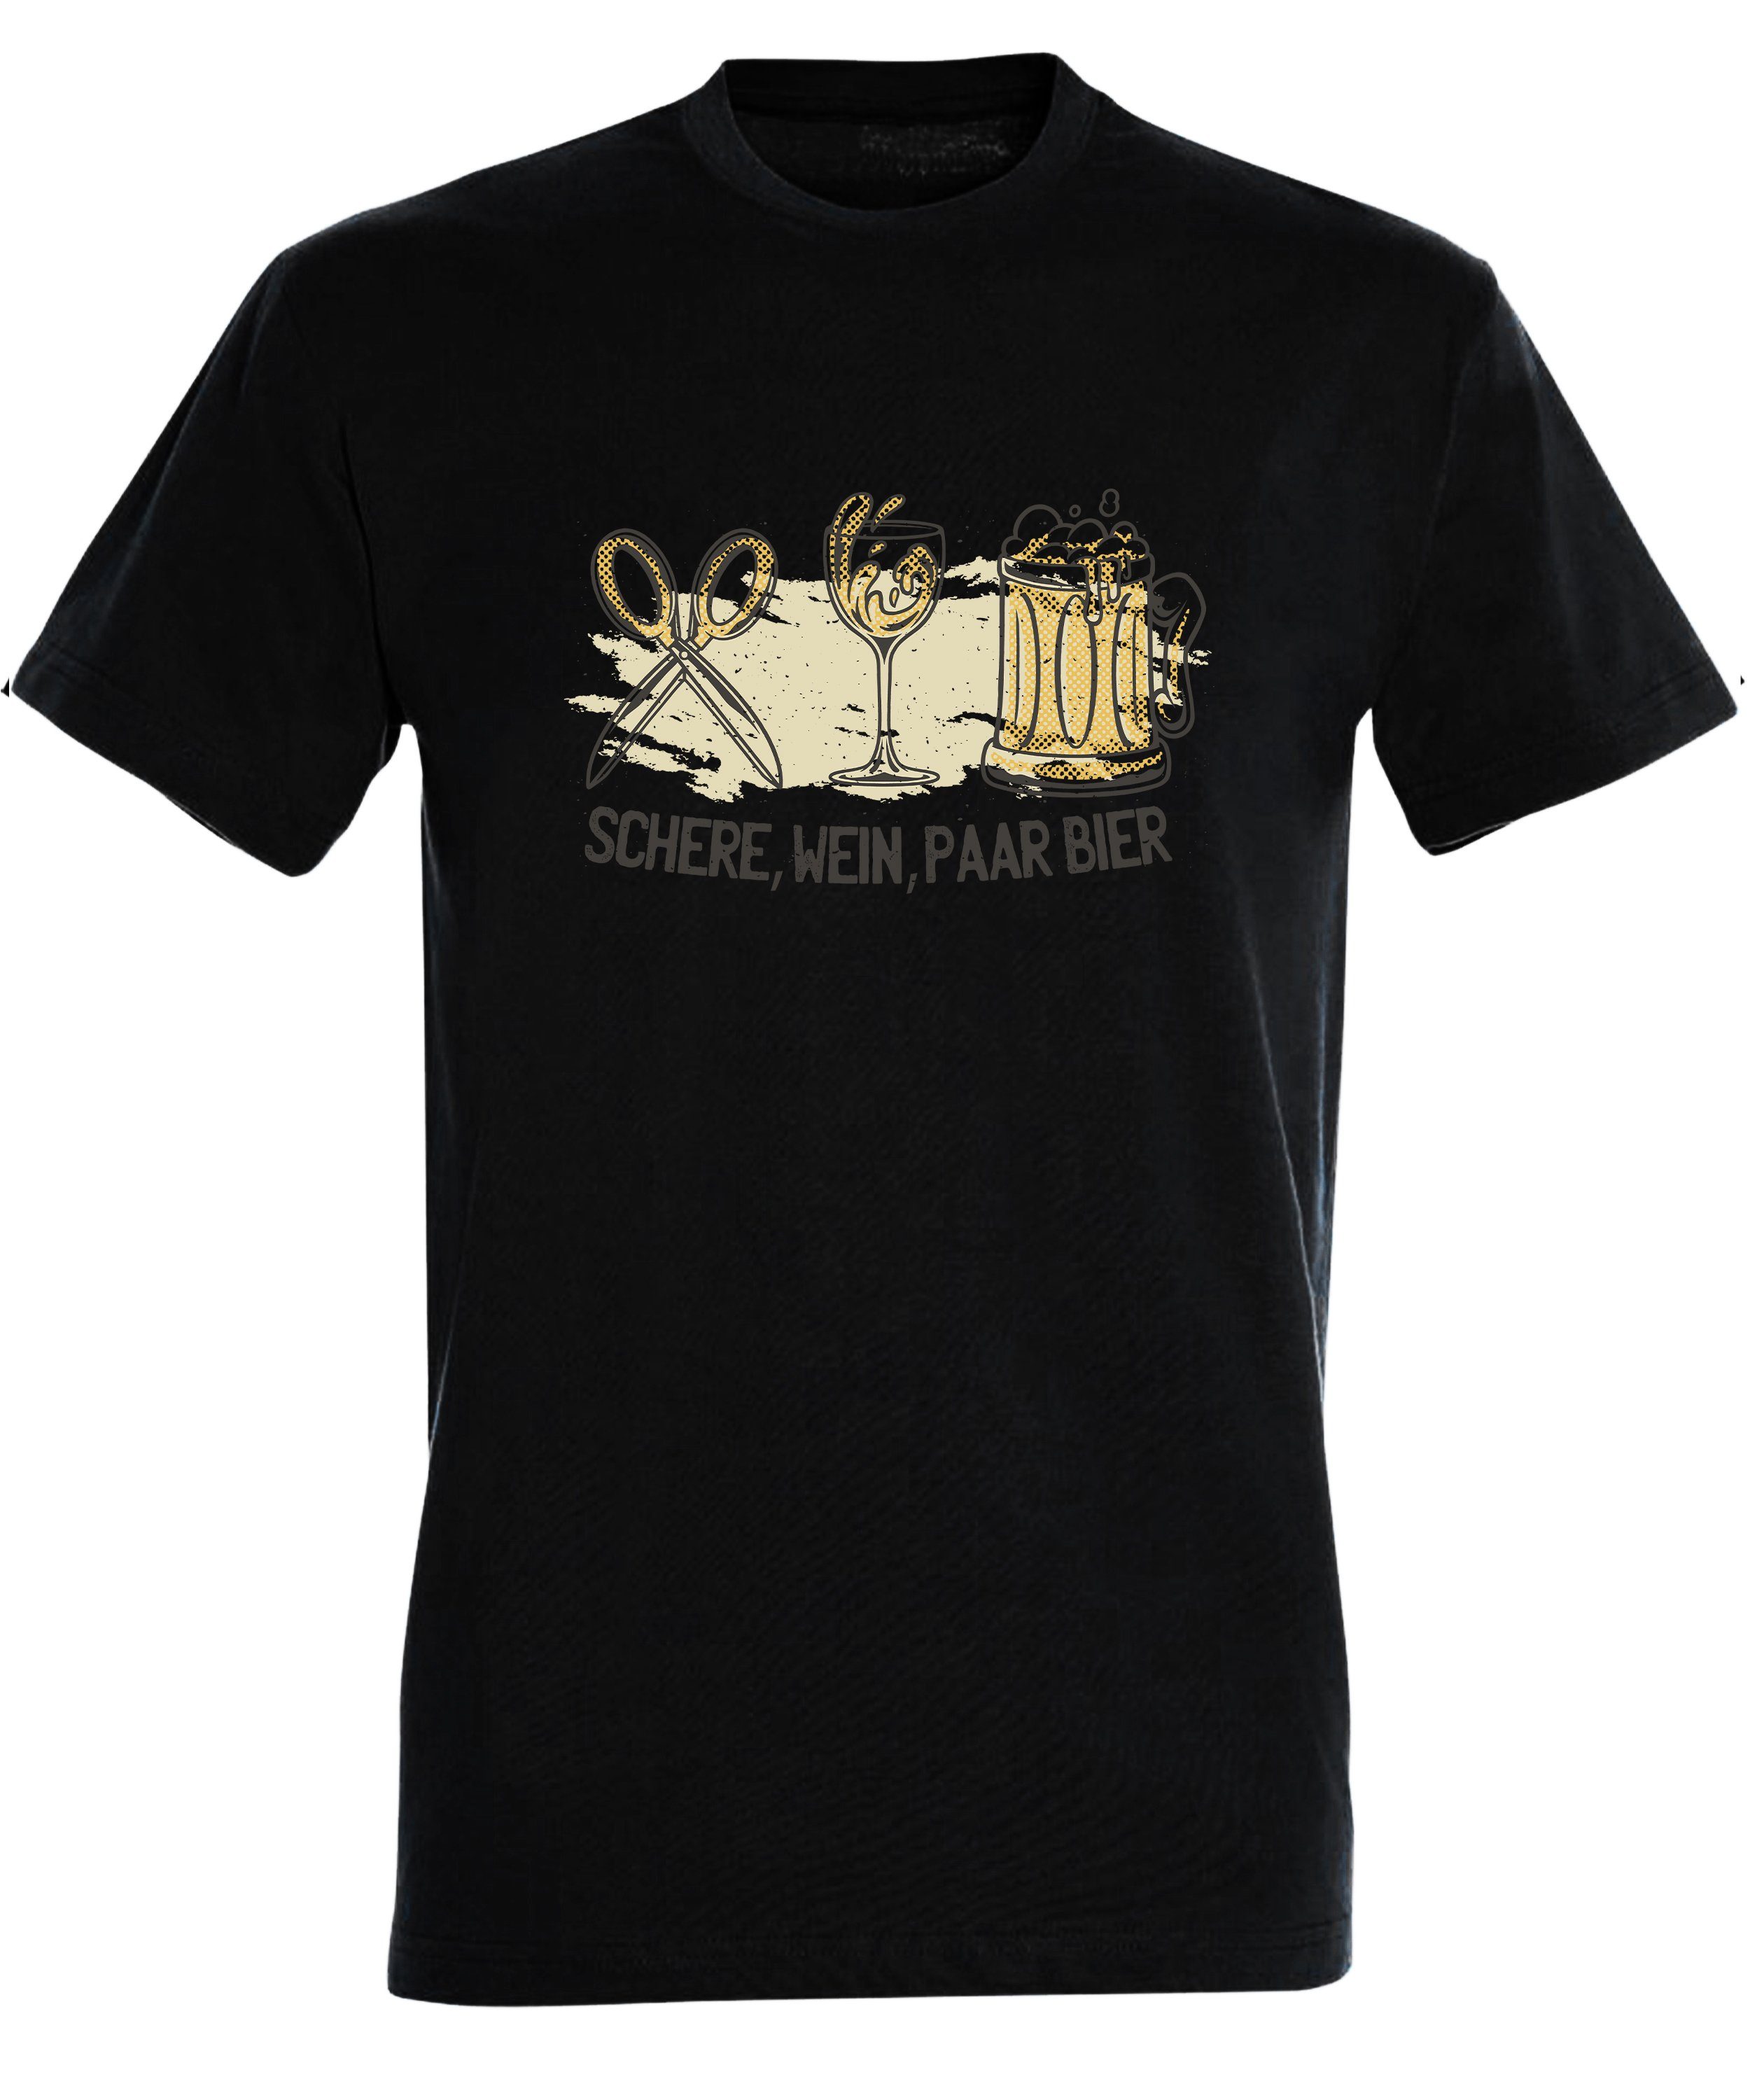 MyDesign24 T-Shirt Herren Sprüche Shirt mit Wein, Baumwollshirt Regular Bier Aufdruck - schwarz Fit, i321 Paar Trinkshirt Schere